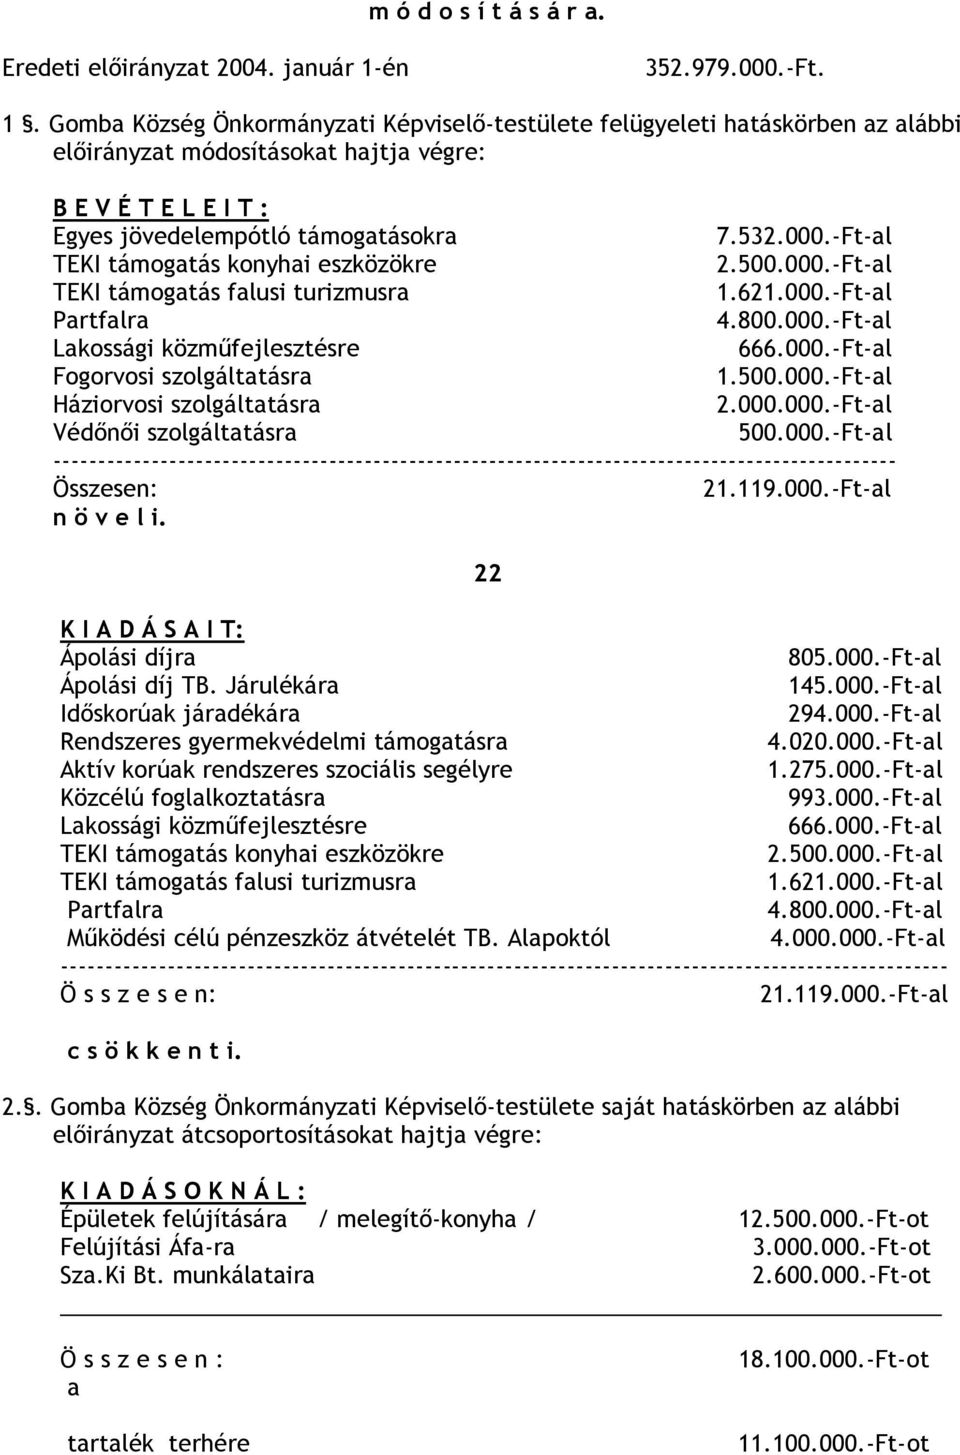 Gomba Község Önkormányzati Képviselı-testülete felügyeleti hatáskörben az alábbi elıirányzat módosításokat hajtja végre: B E V É T E L E I T : Egyes jövedelempótló támogatásokra 7.532.000.